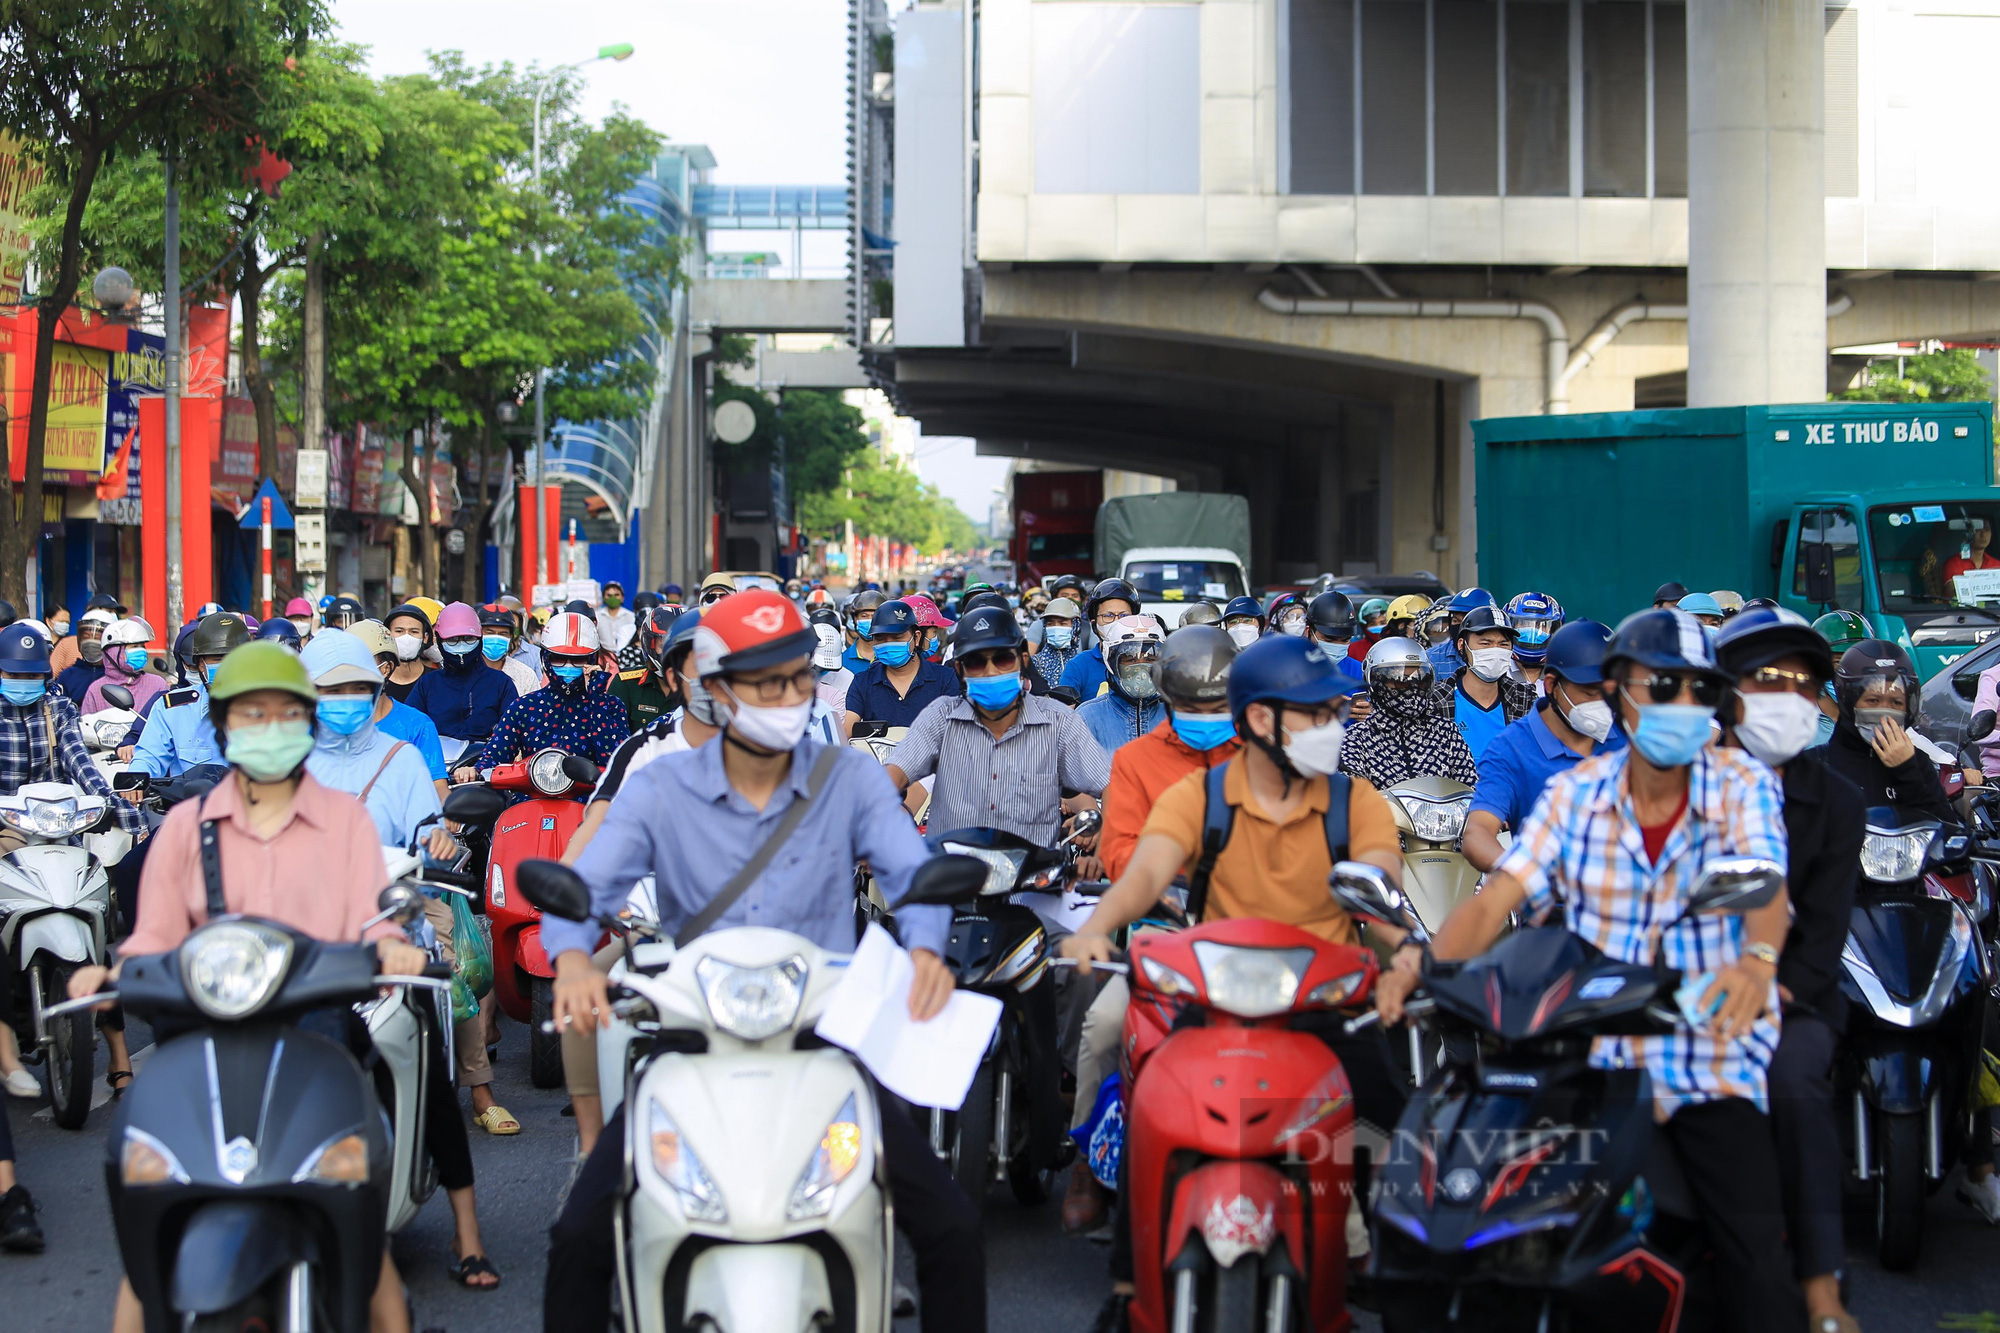 Đường phố Hà Nội vẫn đông đúc khi vùng 1 tiếp tục giãn cách xã hội - Ảnh 5.